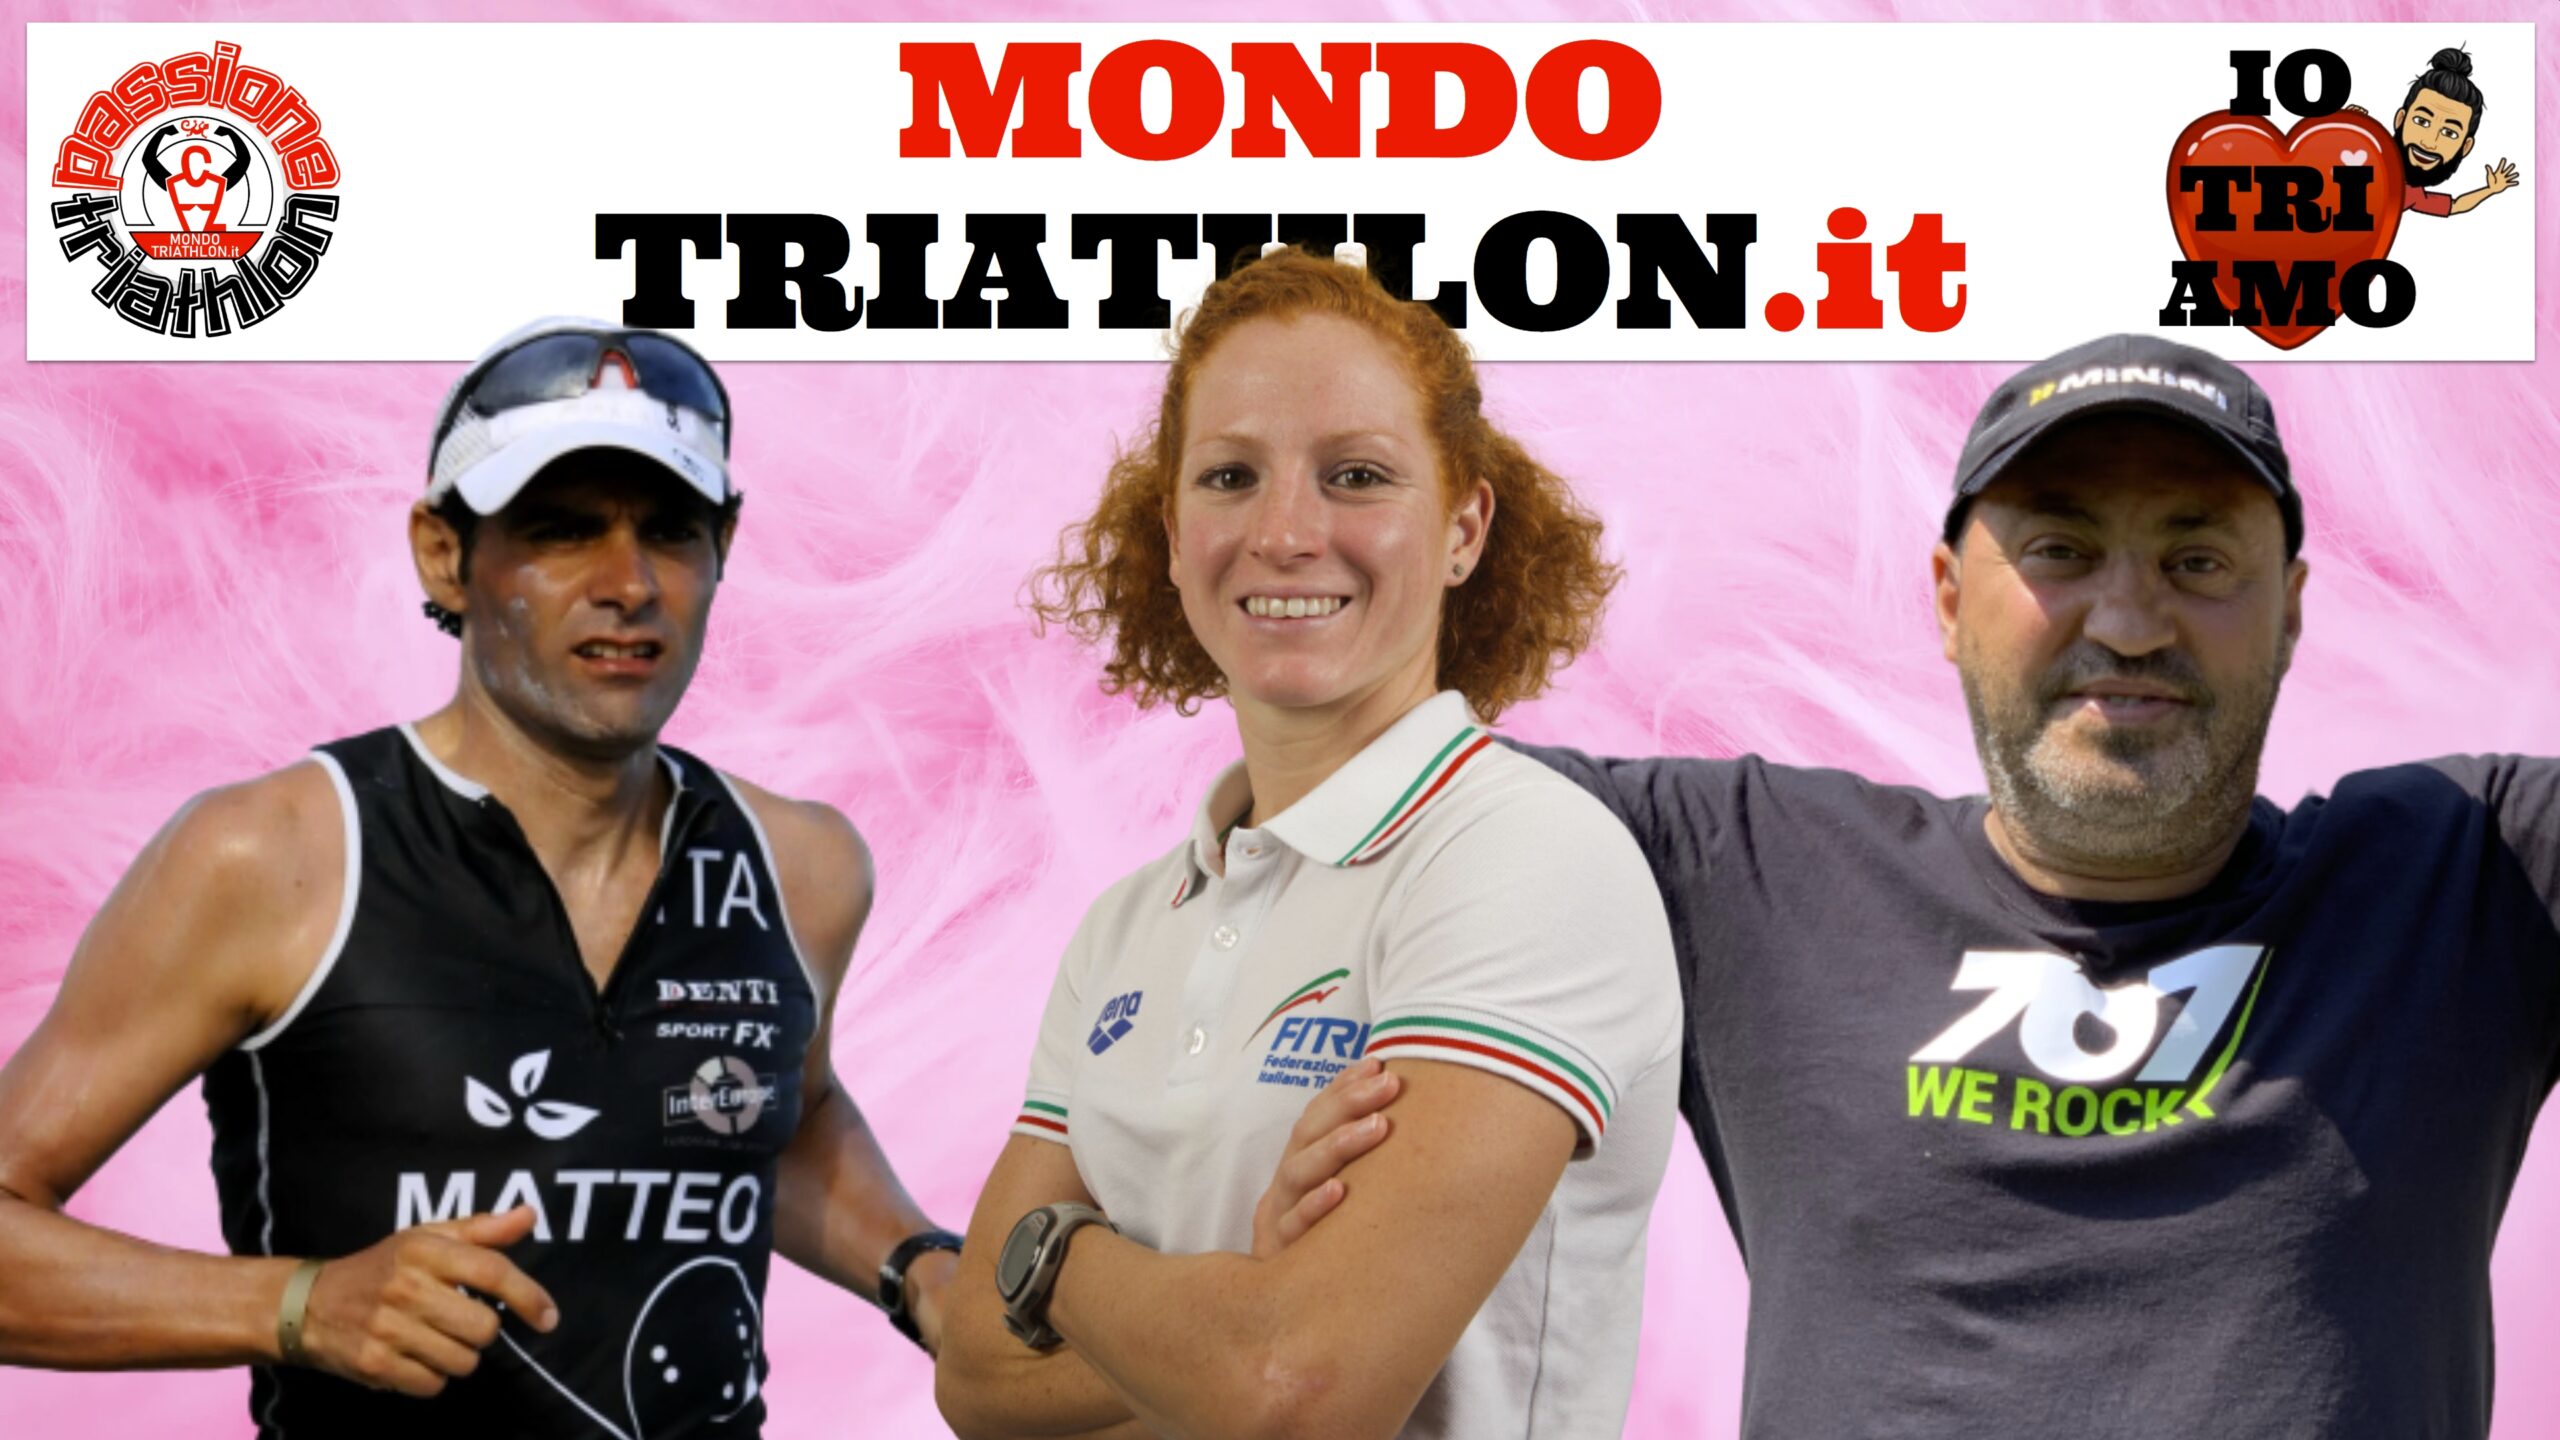 Passione Triathlon, la copertina con i protagonisti dal 6 al 10 luglio 2020